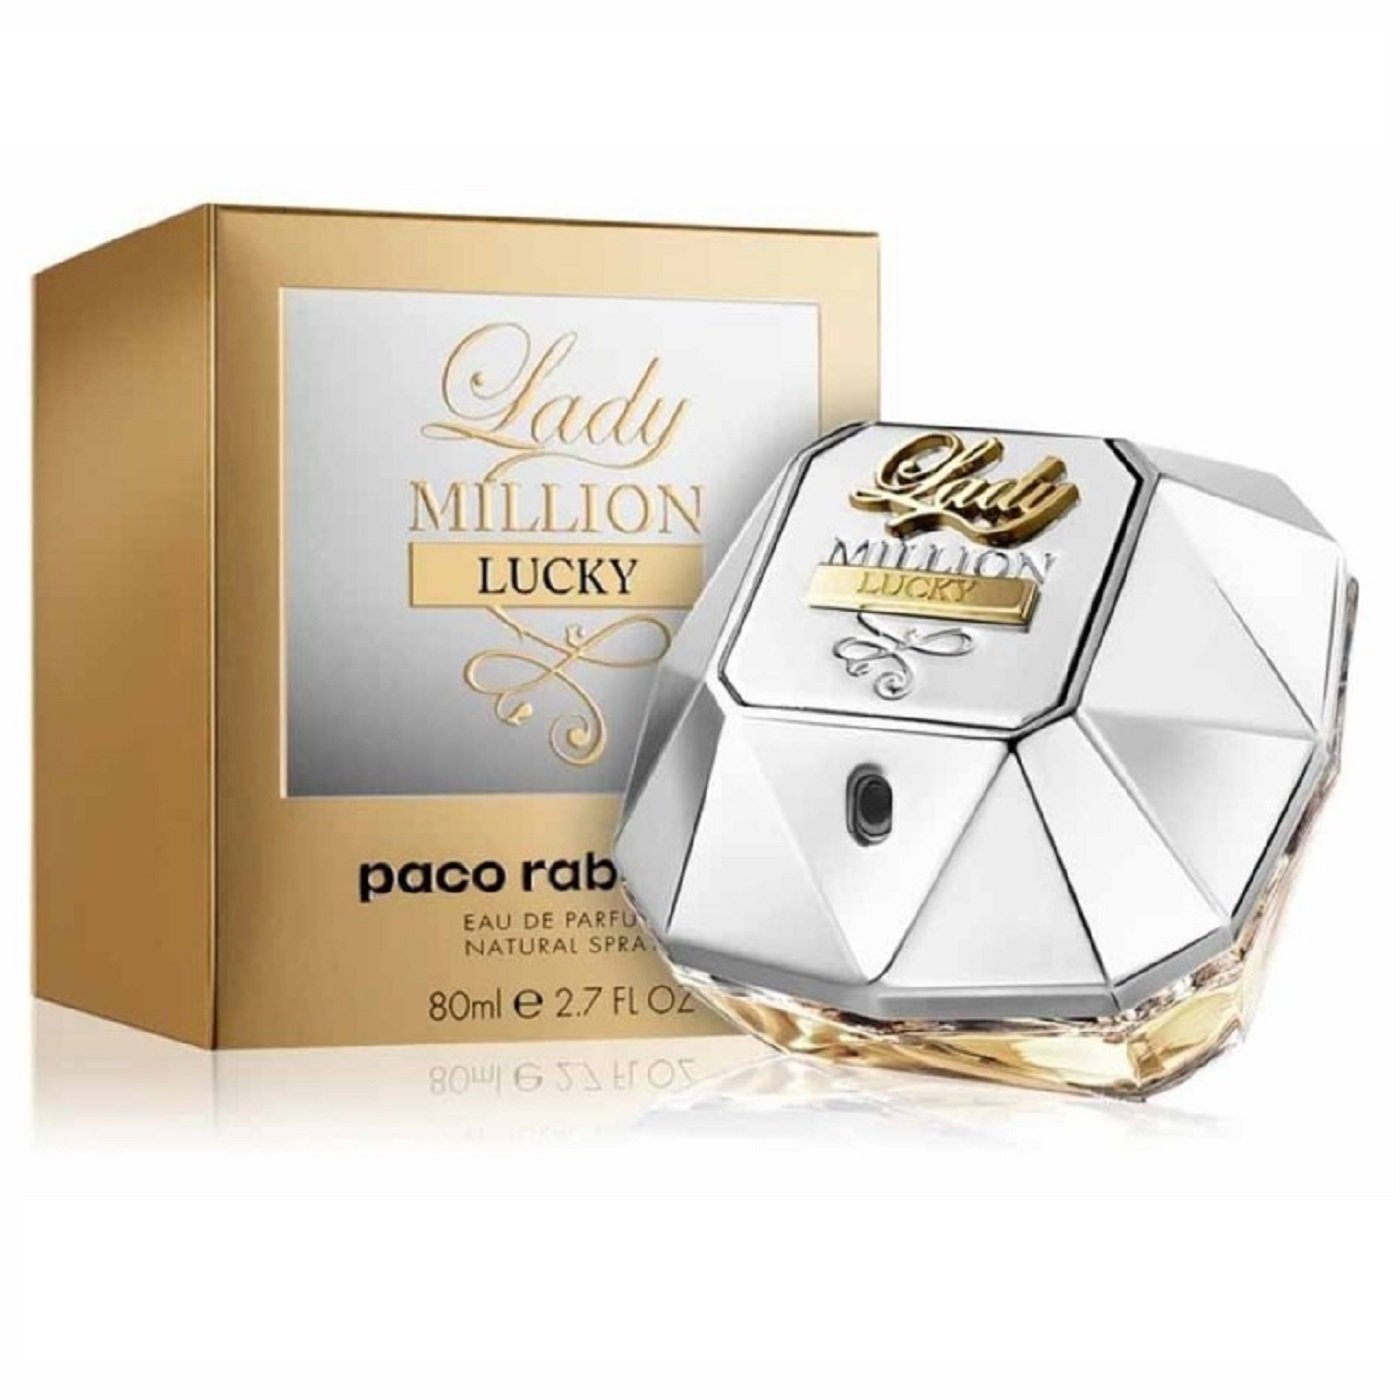 Paco Rabanne Lady Million Lucky Eau de Parfum – Eshtir.com UAE